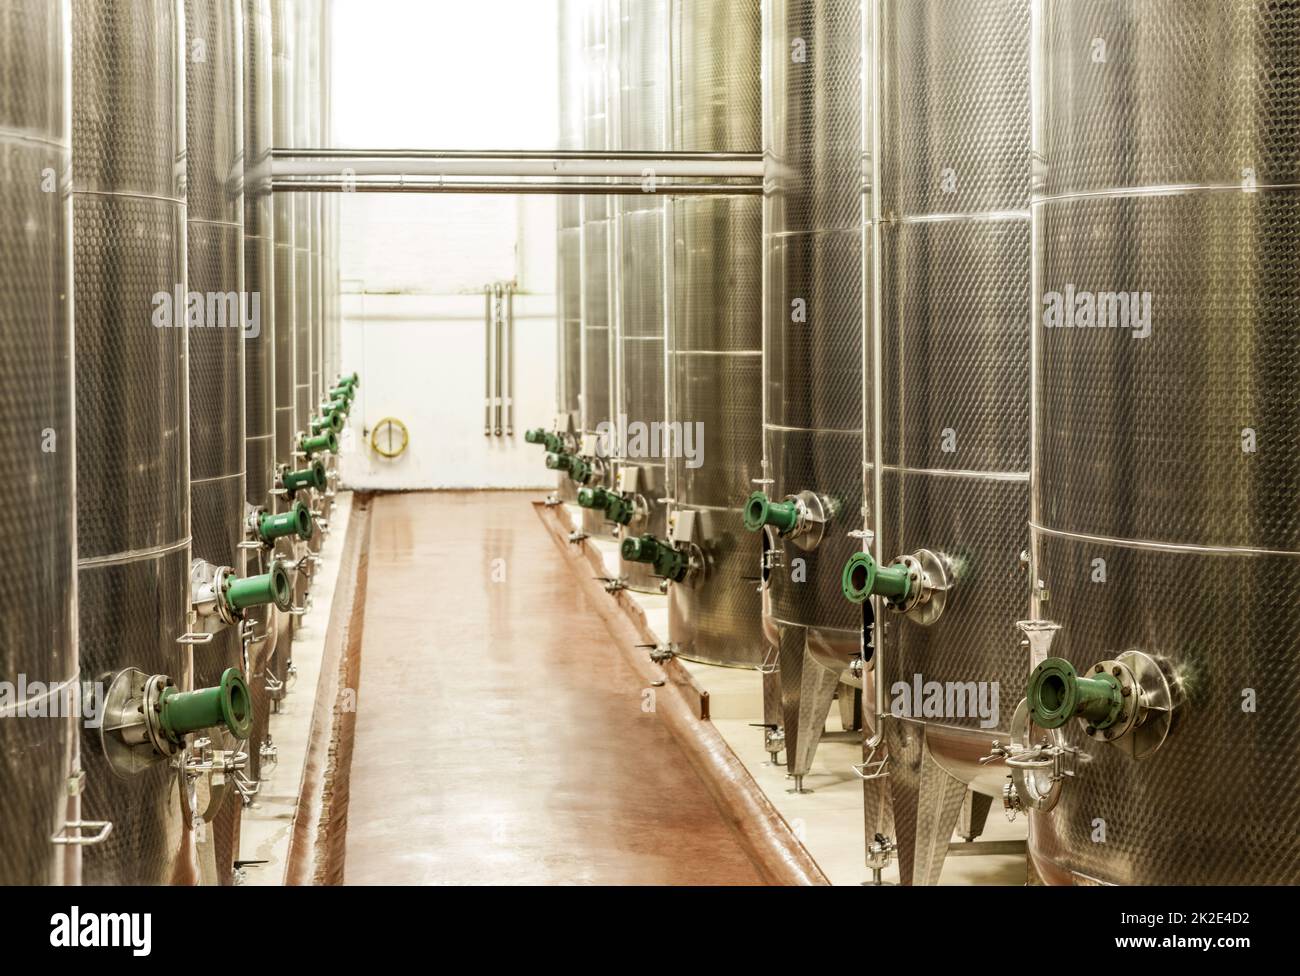 Produzione di vino su larga scala. Shot dei recipienti di fermentazione all'interno di una vinificazione. Foto Stock